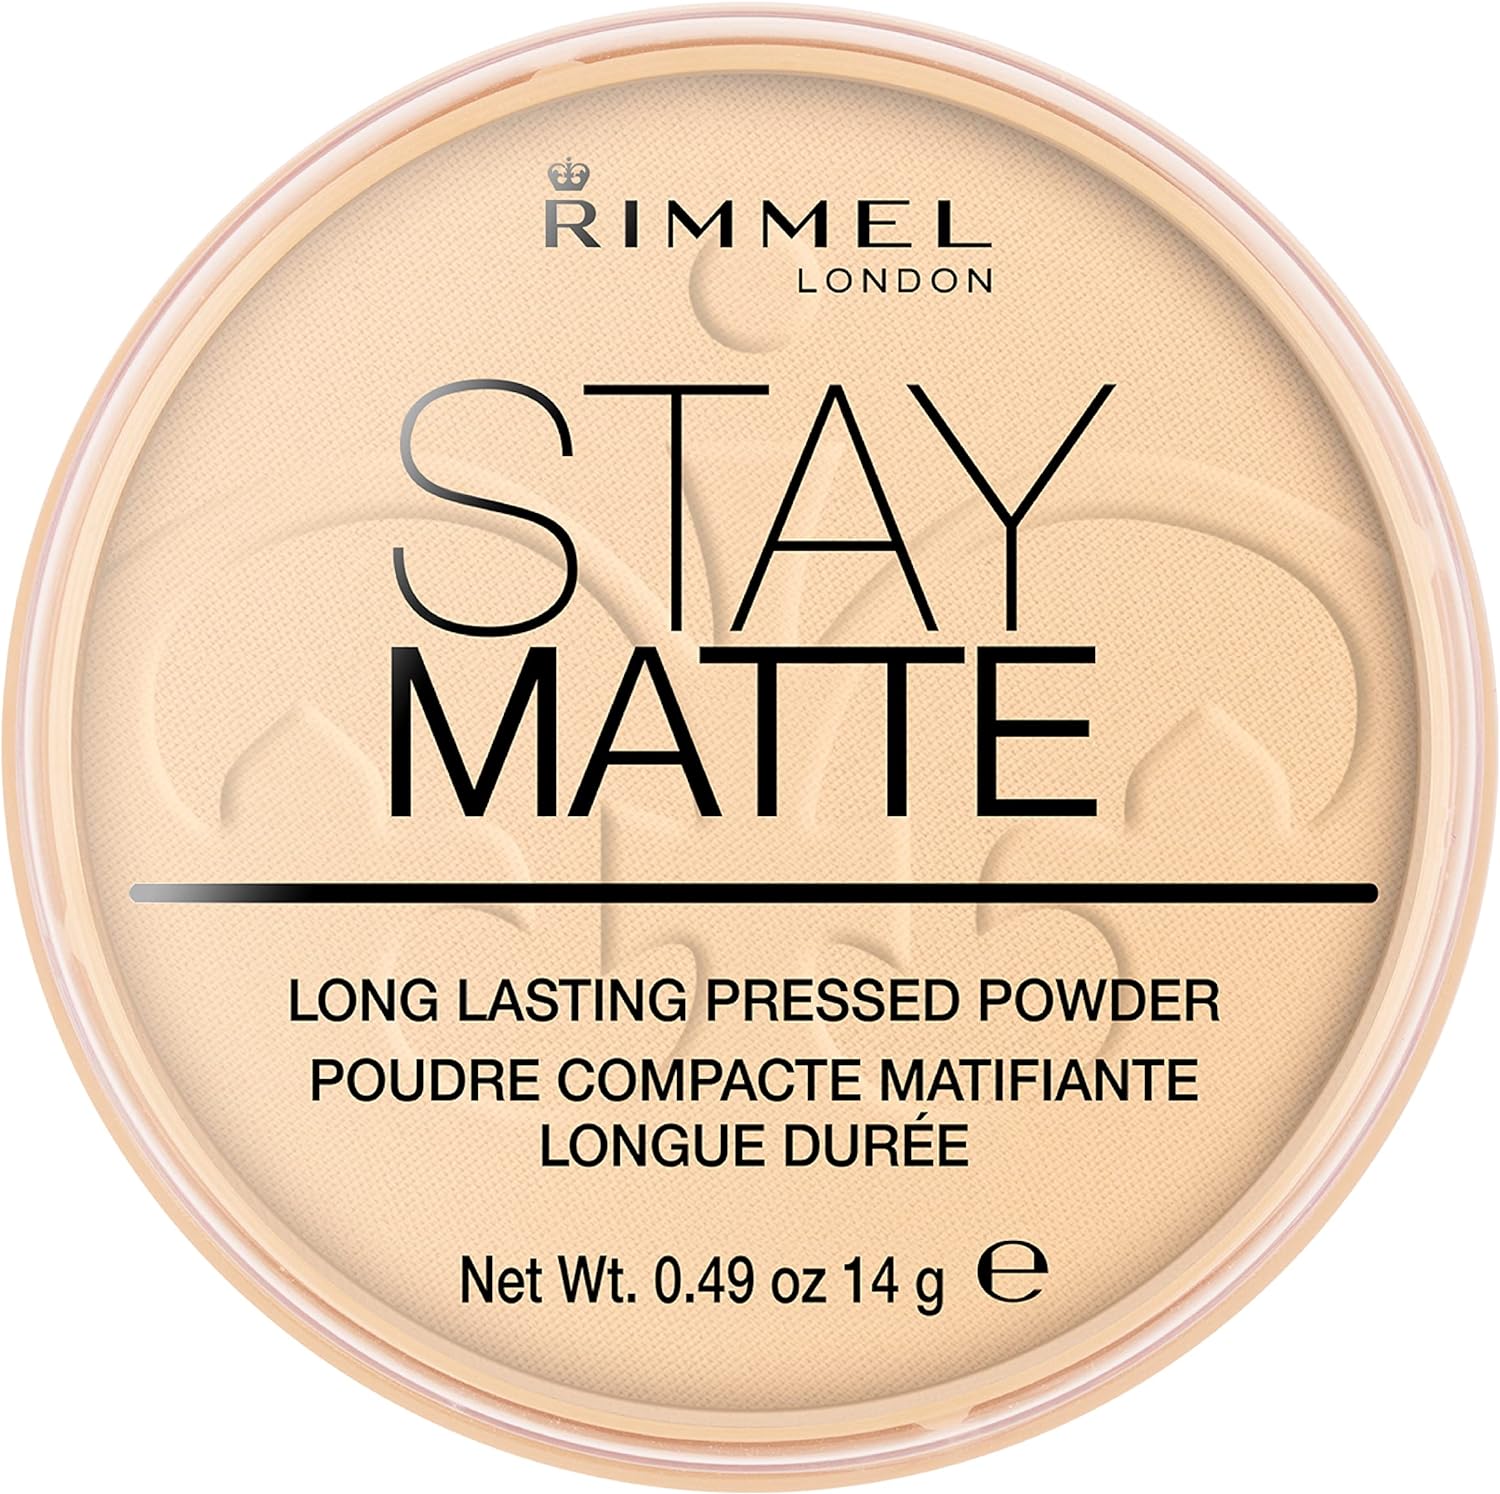 Rimmel London Stay Matte Powder Polvos de maquillaje Tono 5 - 14 gr